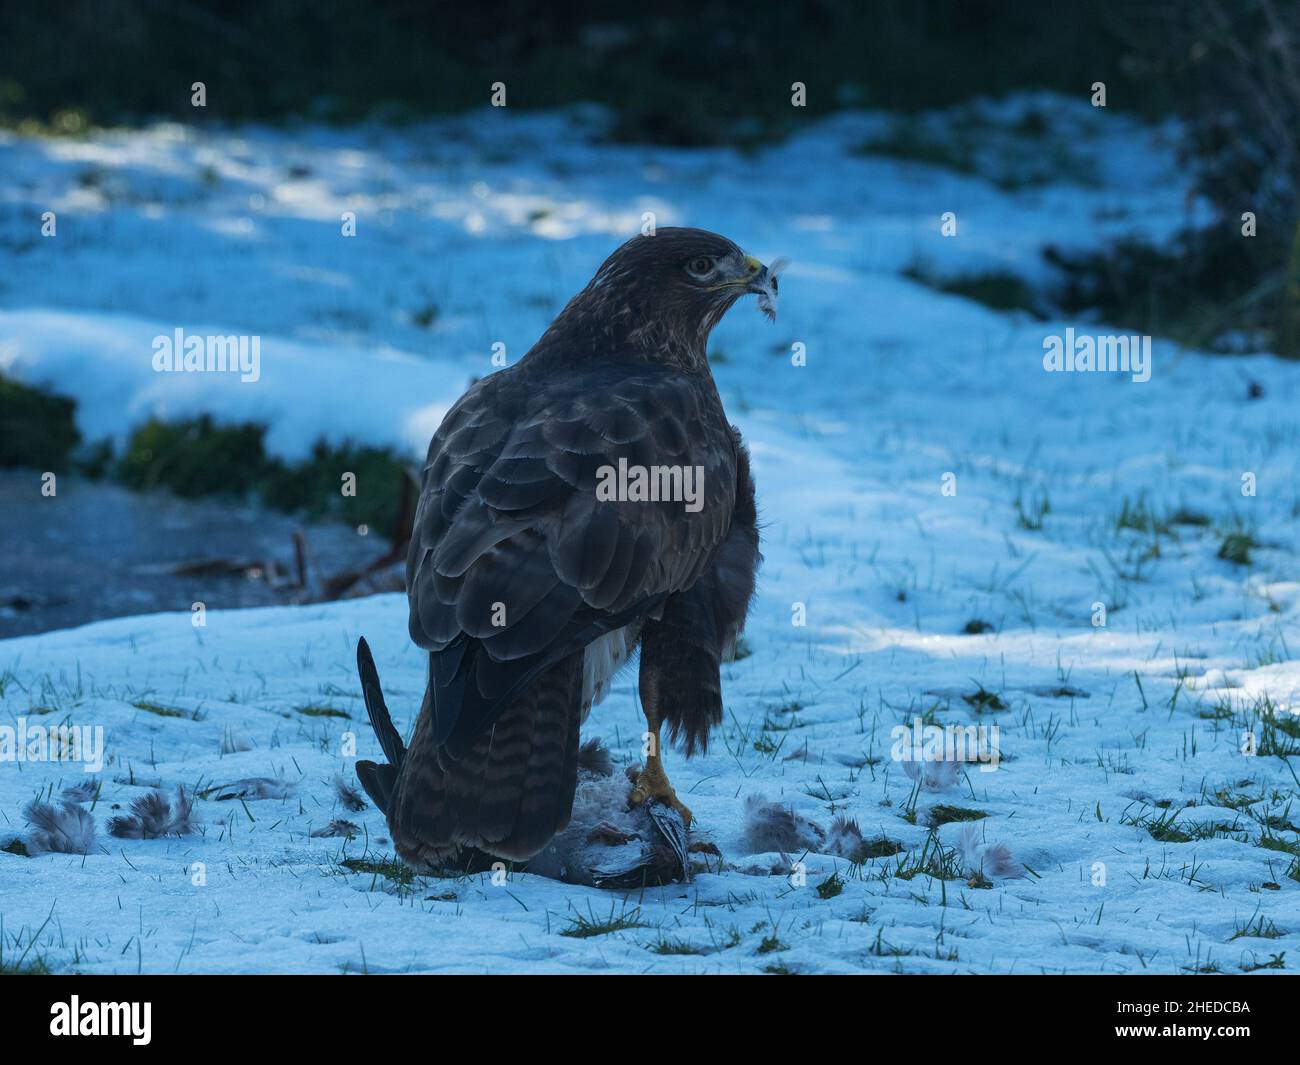 Buteo buteo Buteo, un bourdonnet commun se nourrissant d'un pigeon en bois mort Columba Palumbus sur une pelouse enneigée, Ringwood, Hampshire février Banque D'Images